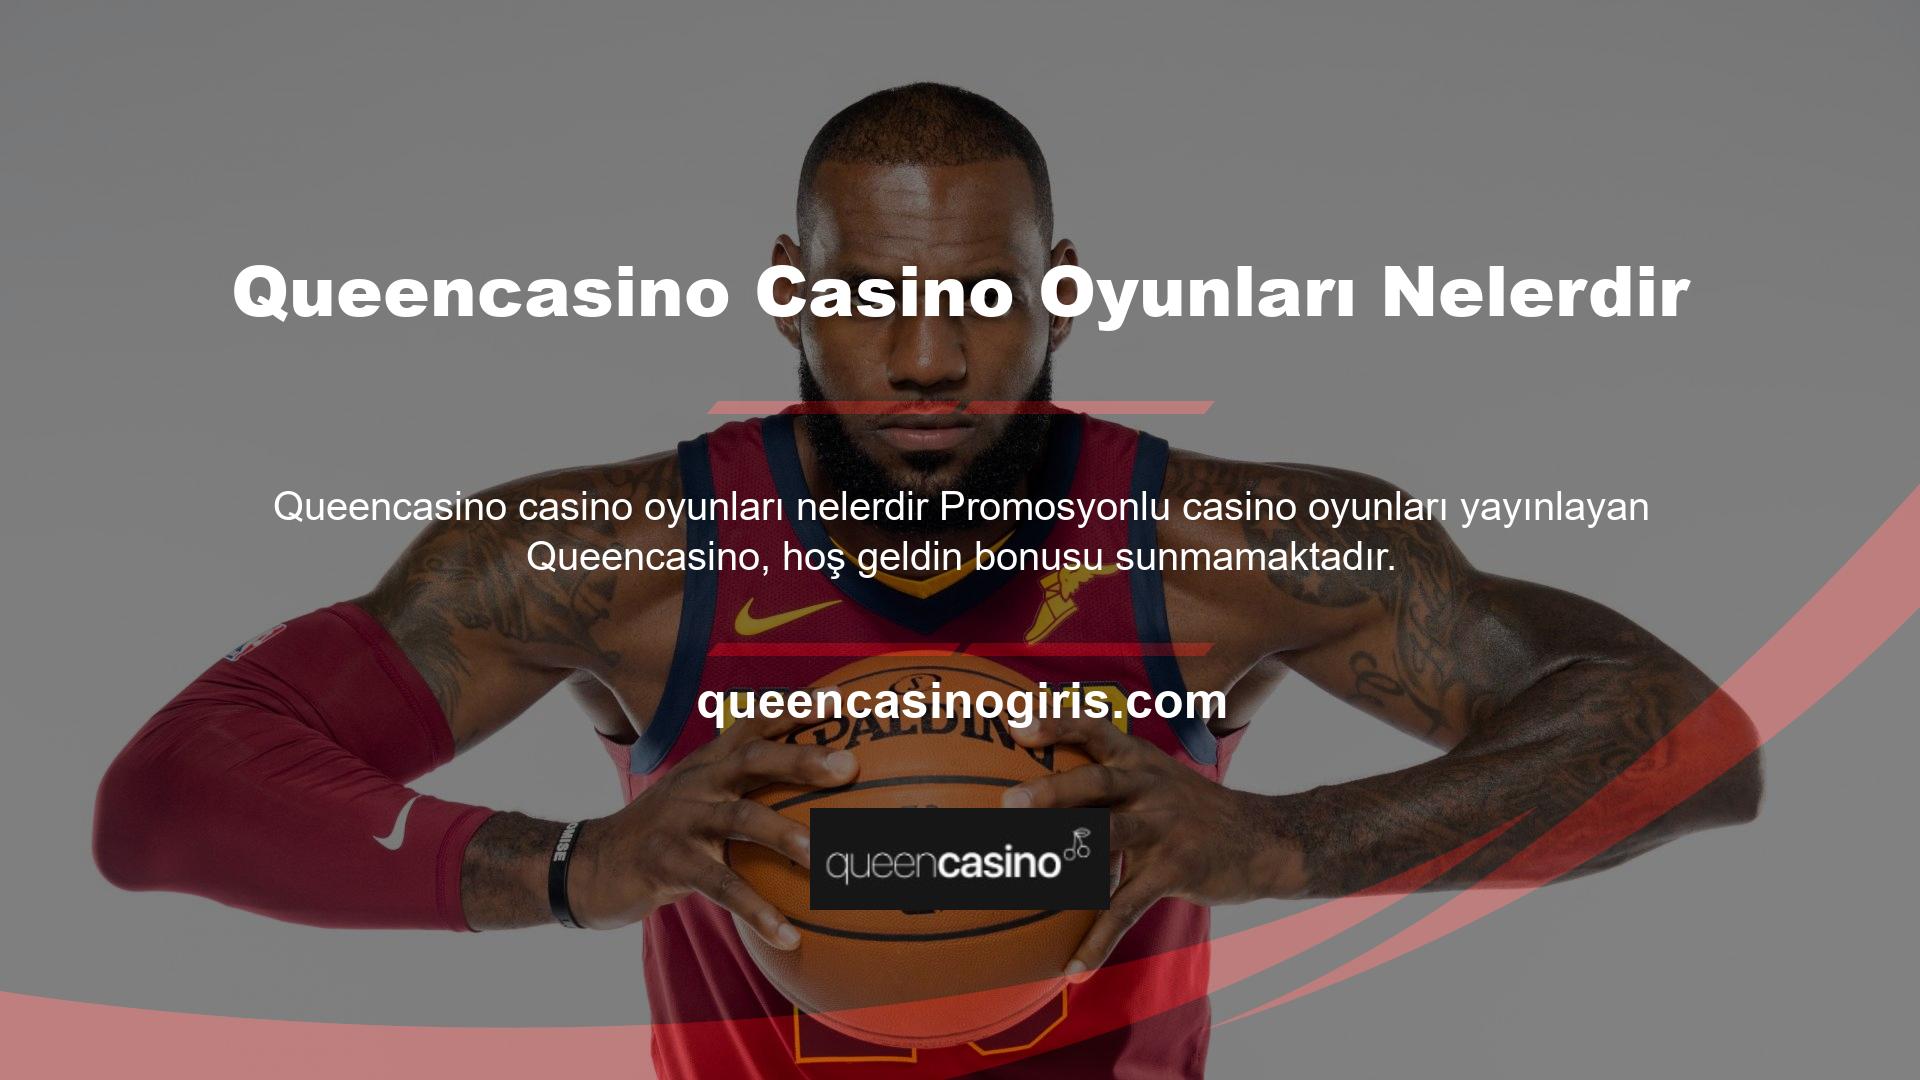 Queencasino casino oyunları nelerdir